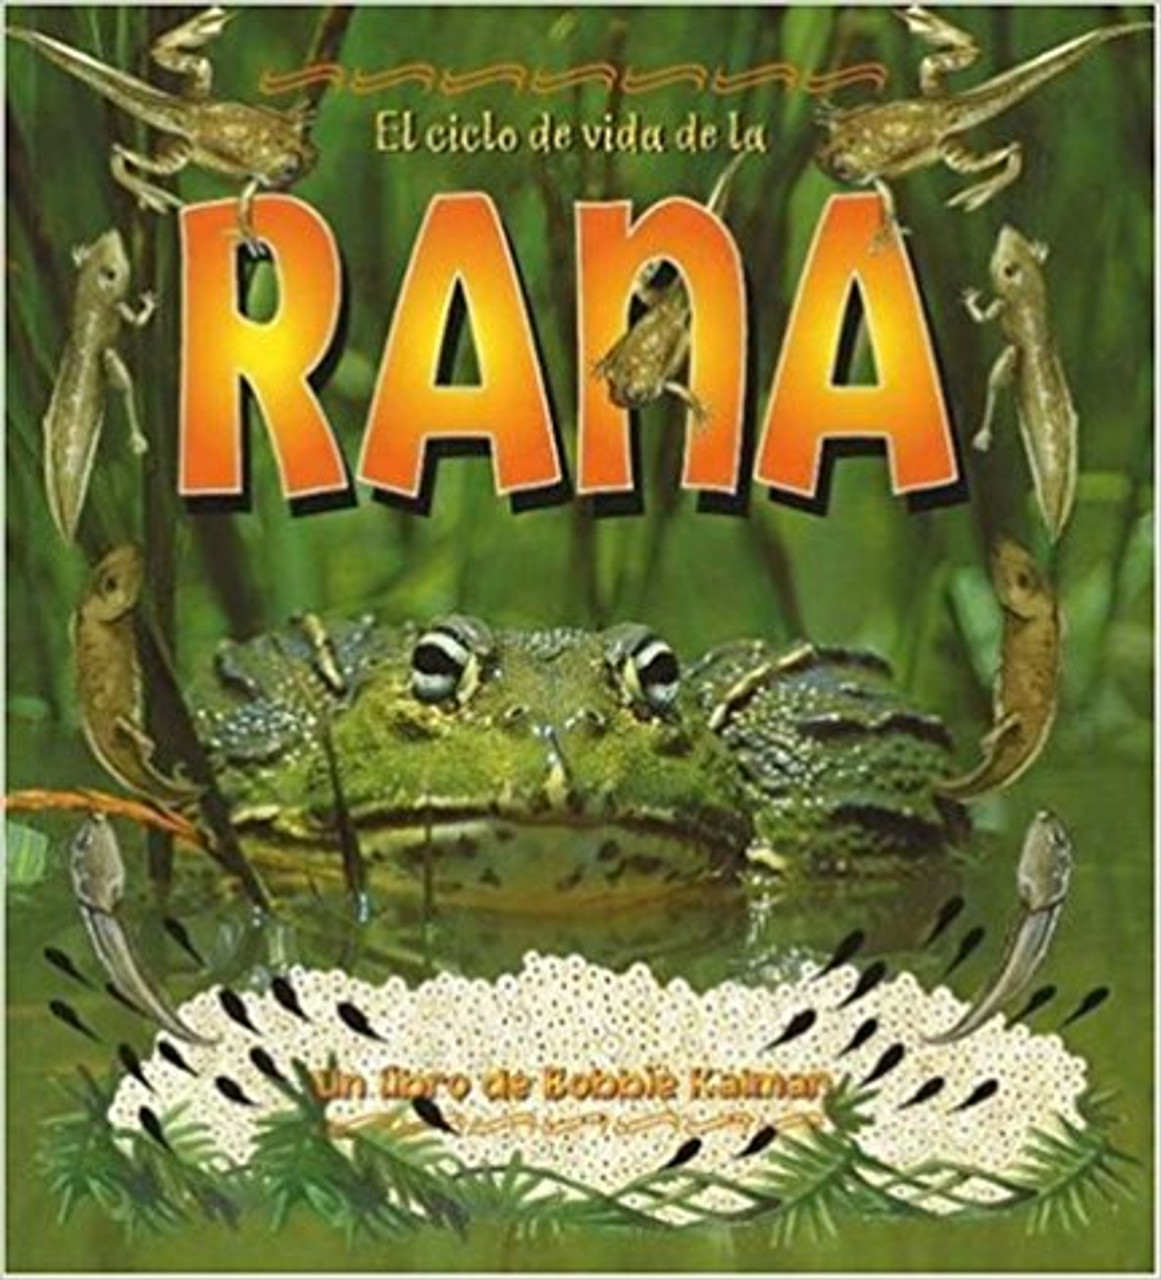 El Ciclo de Vida de la Rana by Bobbie Kalman